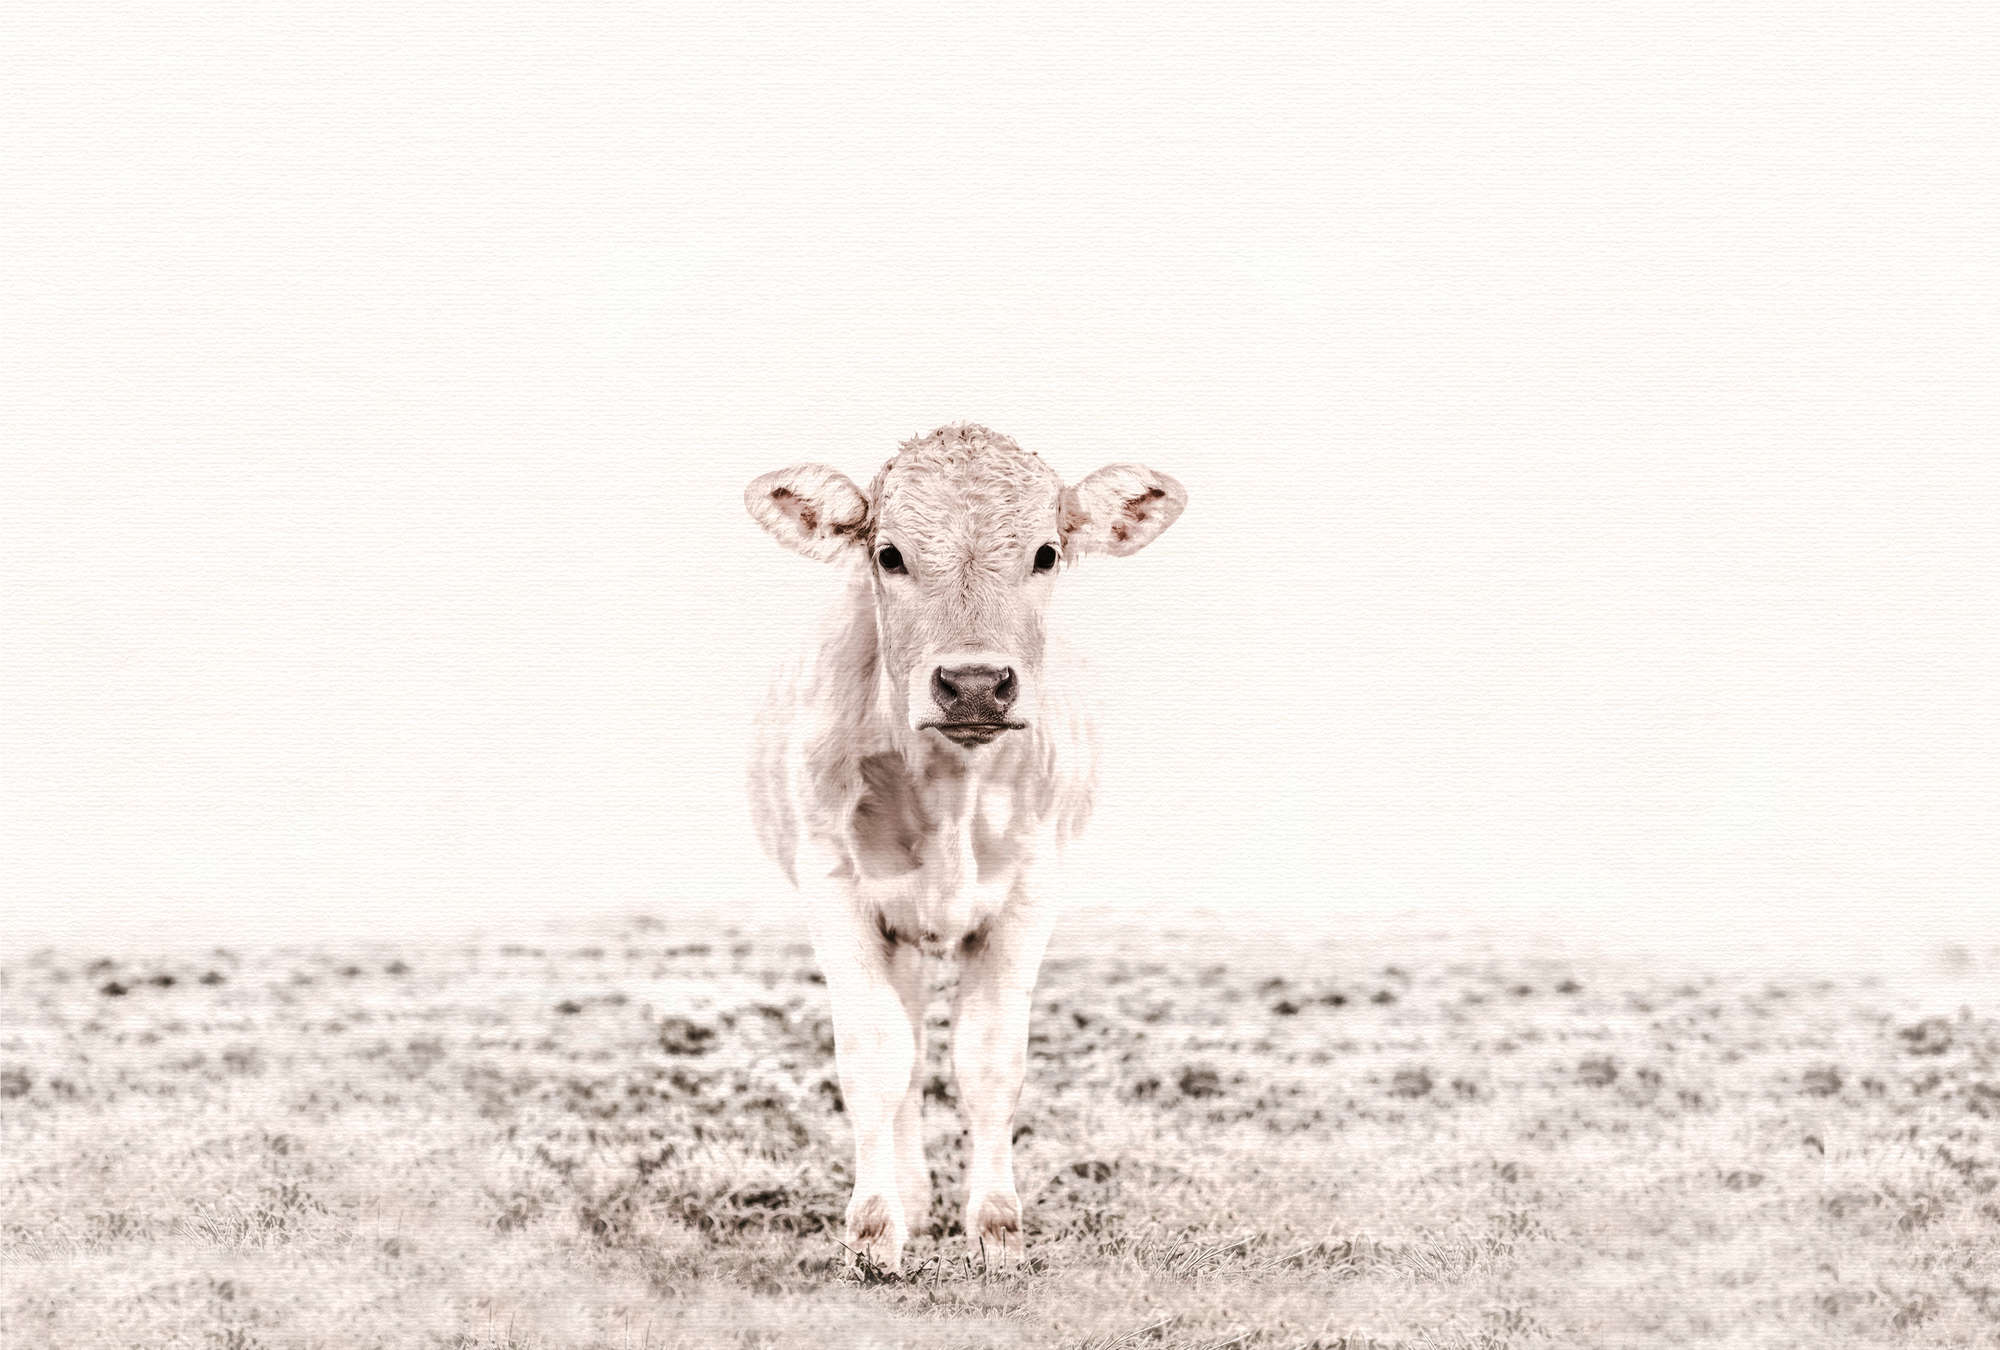             Papier peint vache & prairie en noir et blanc
        